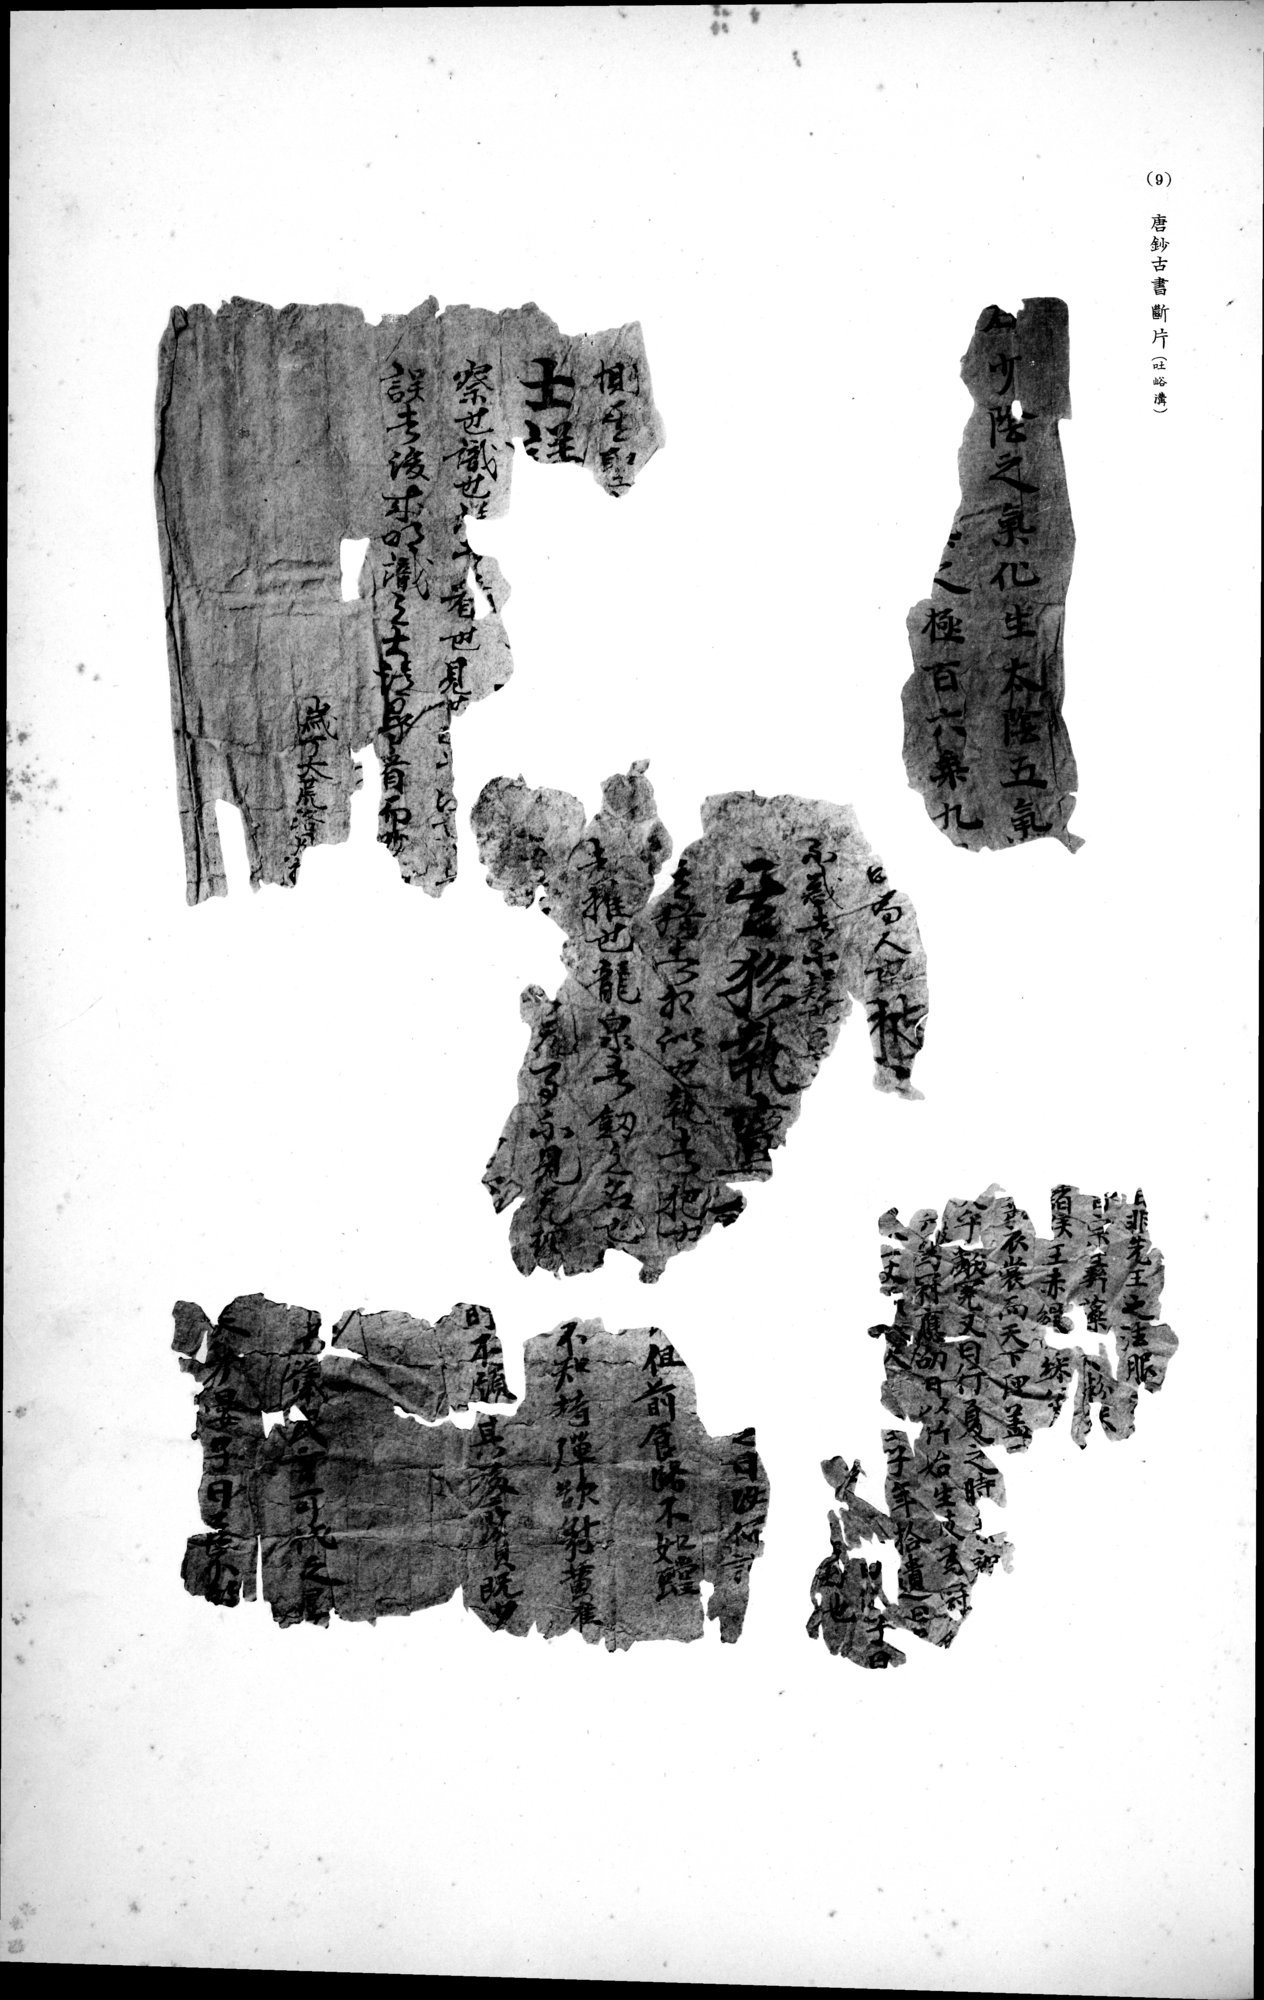 西域考古図譜 : vol.2 / Page 247 (Grayscale High Resolution Image)